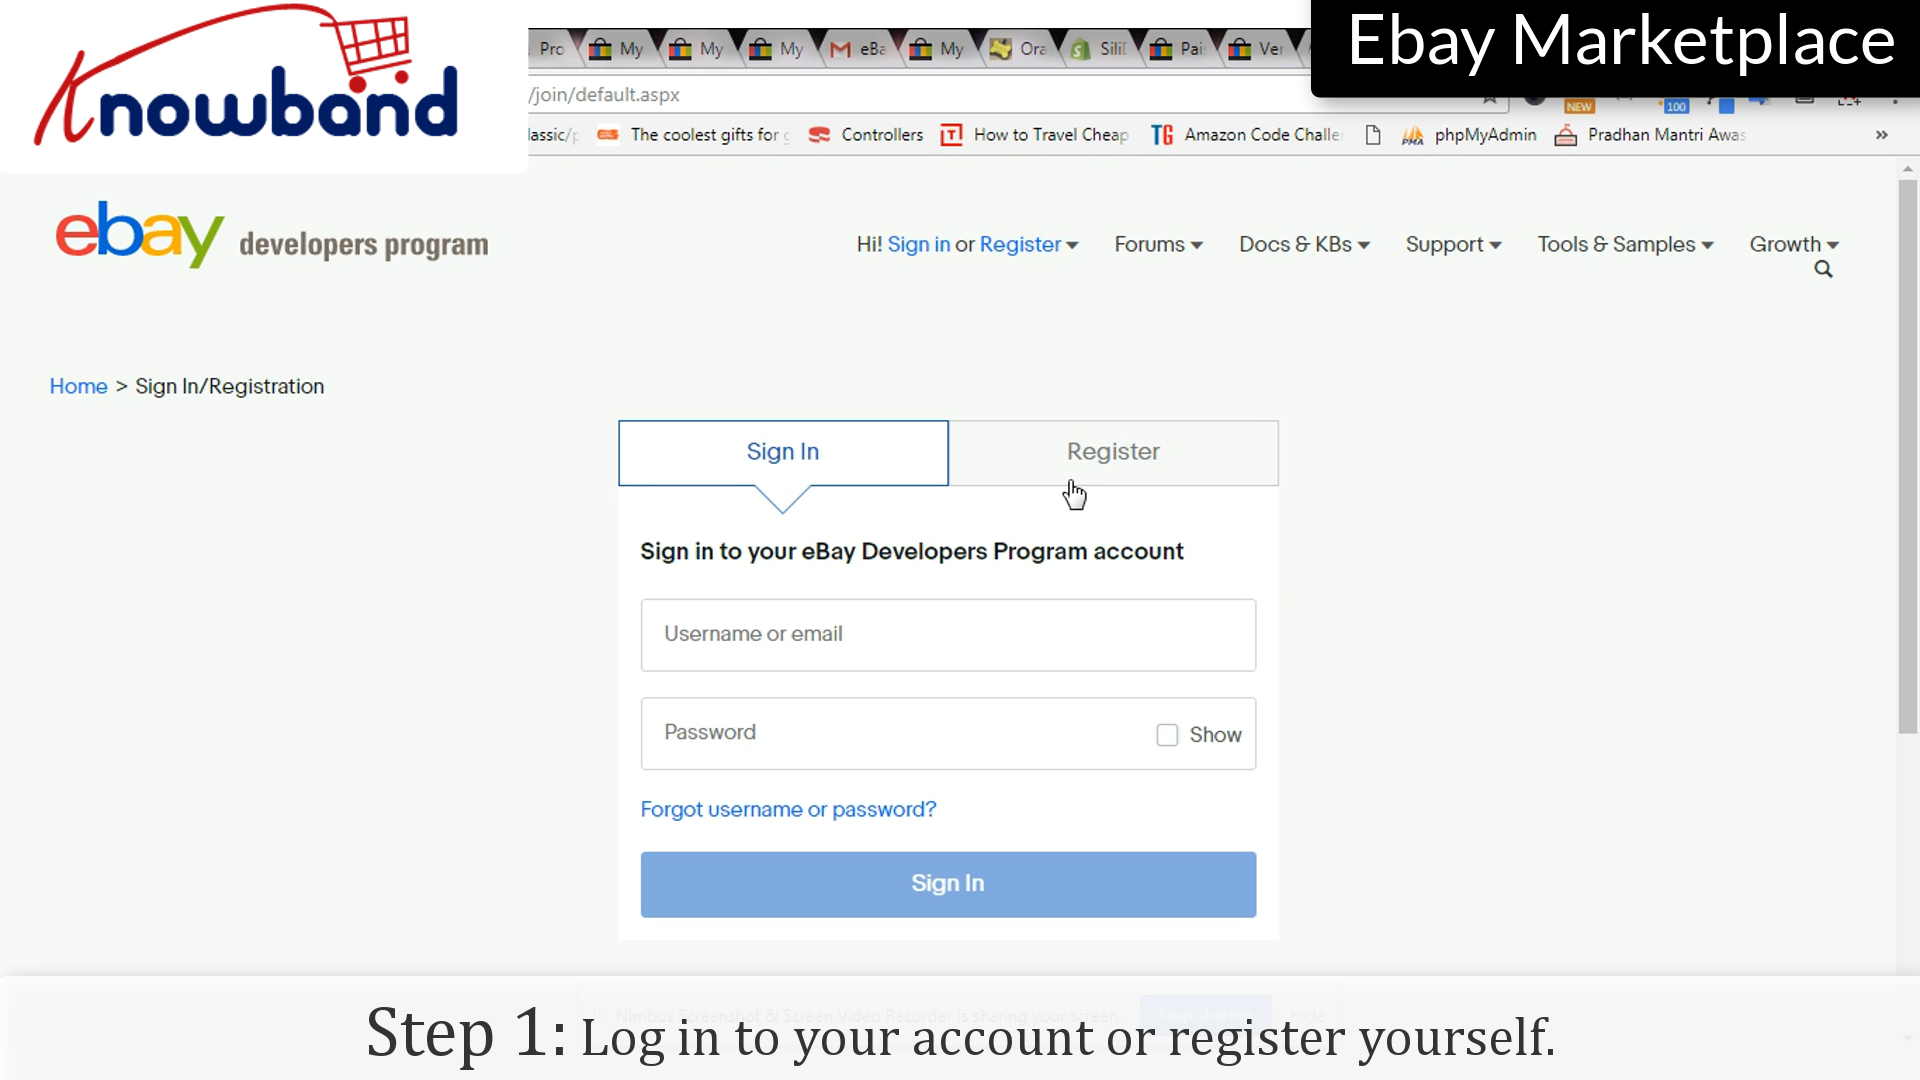 Anmelden | Account registrieren